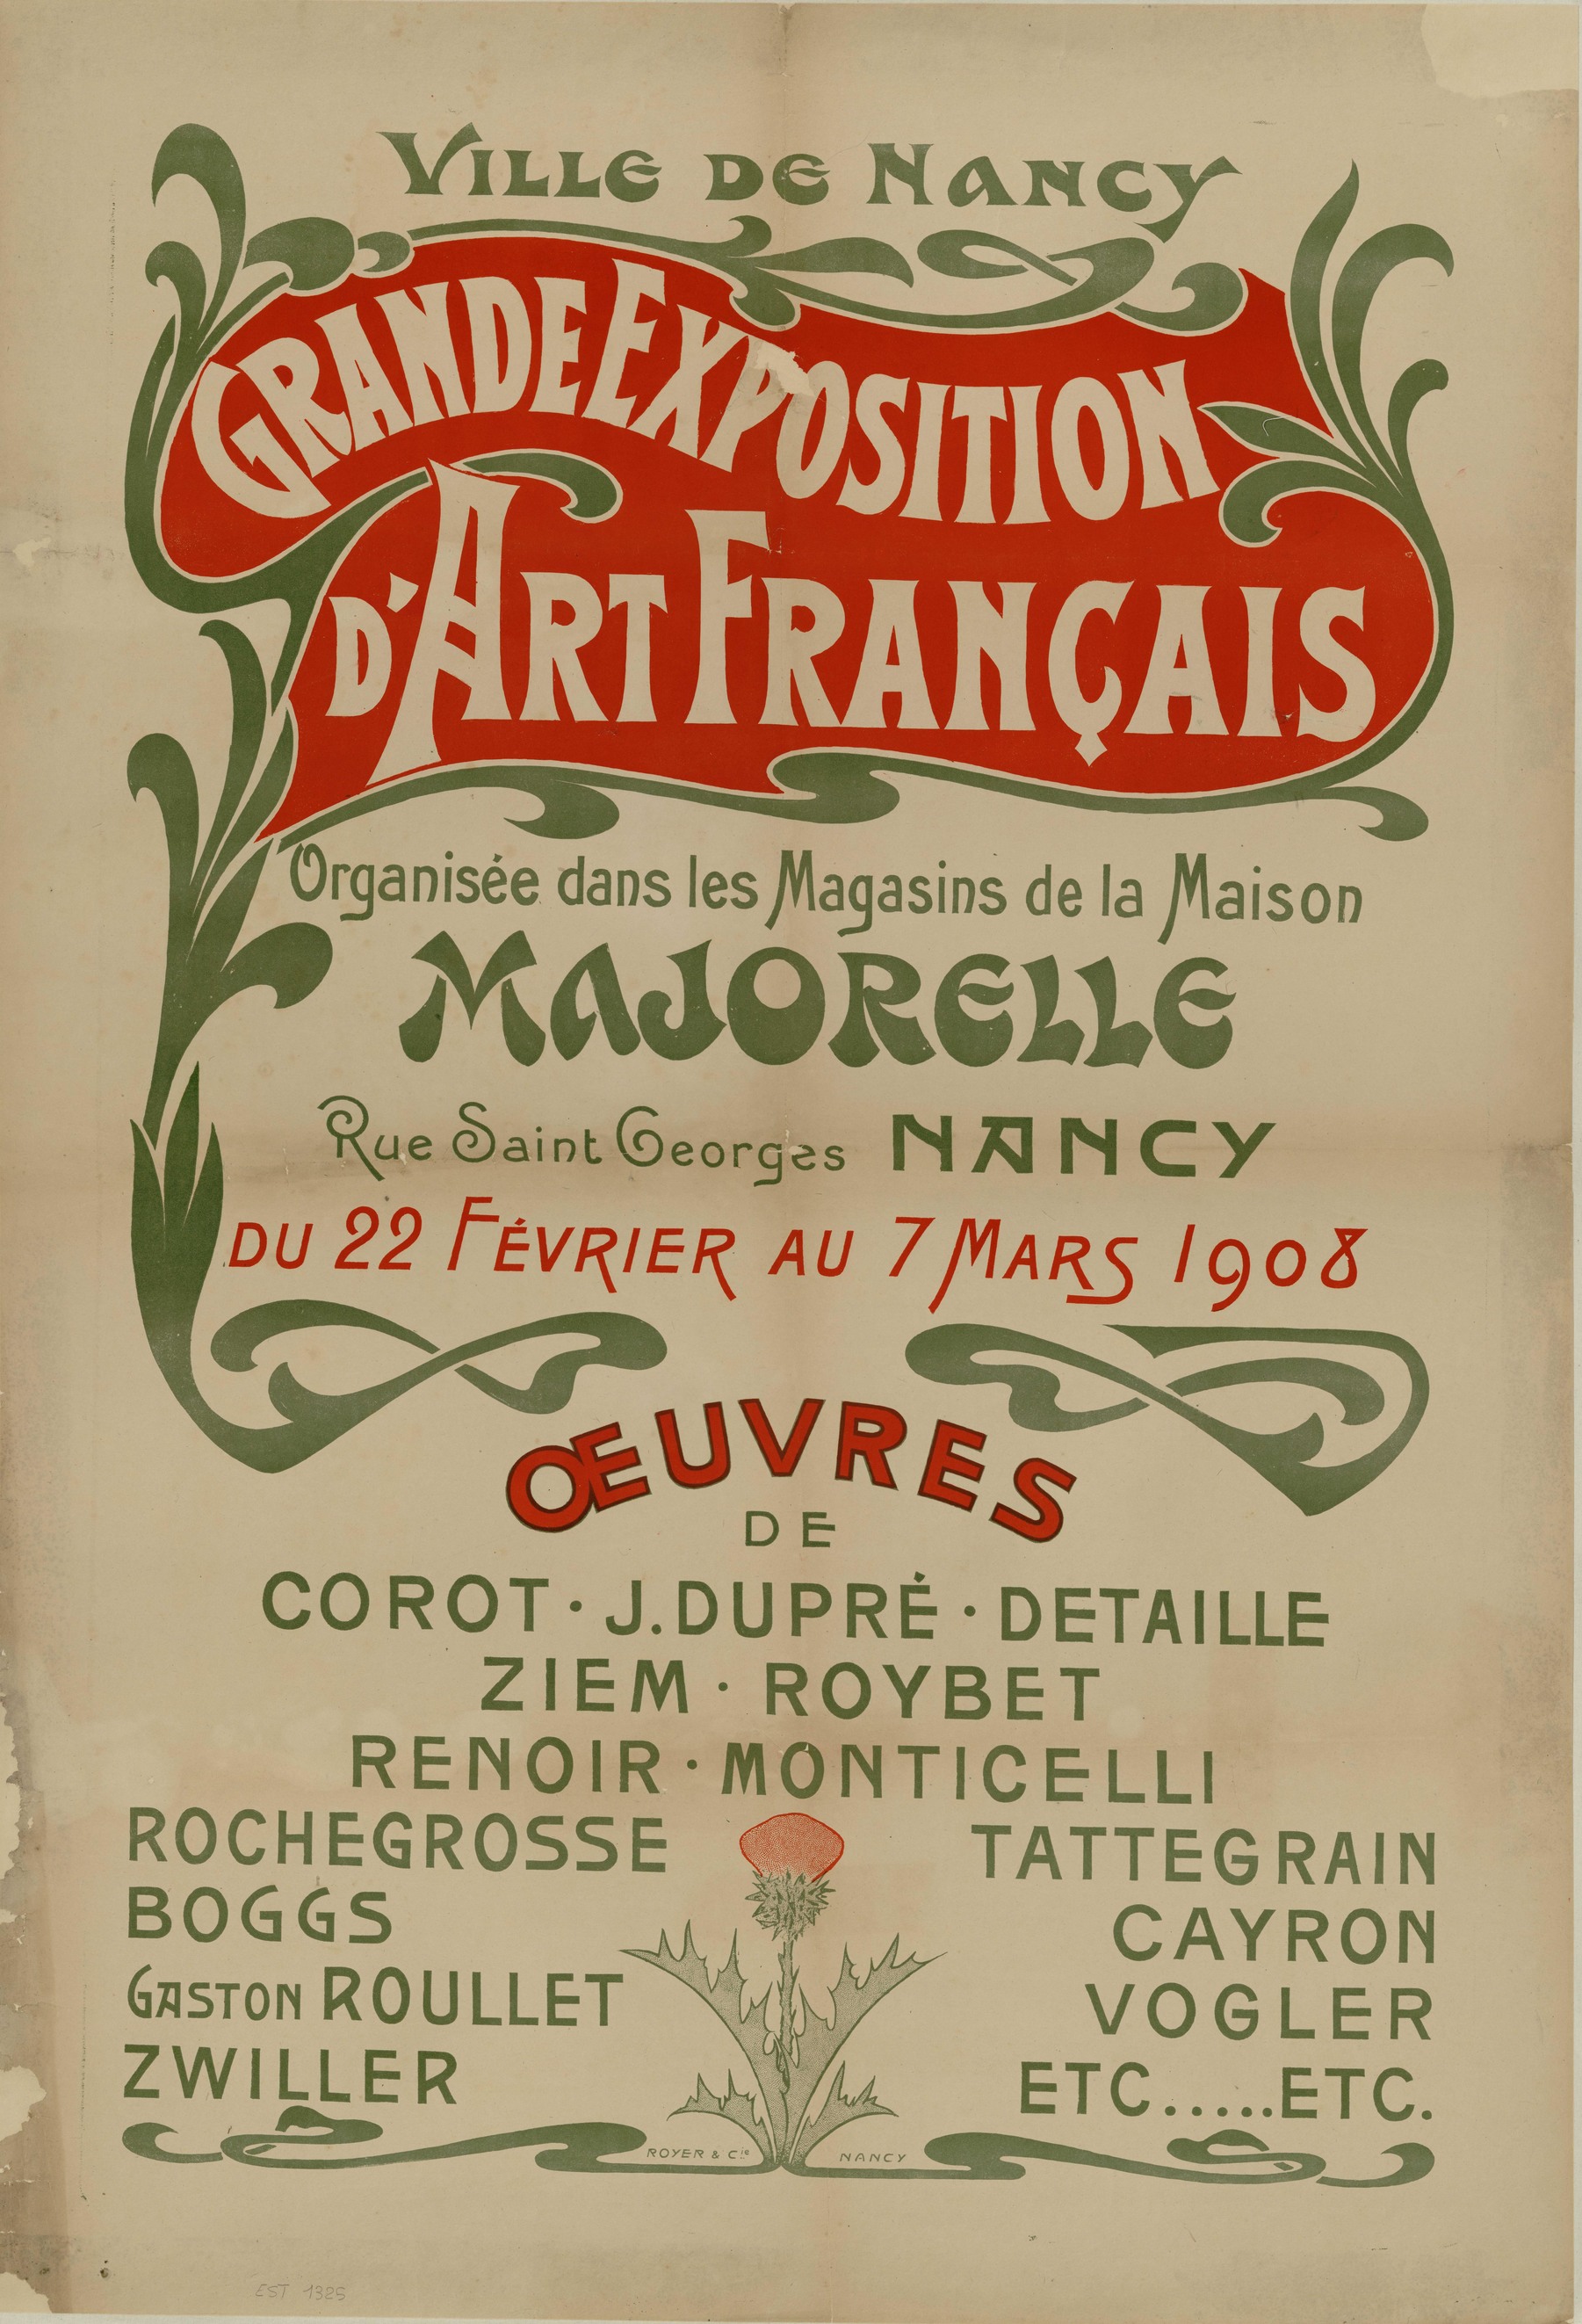 Contenu du Grande exposition d'art français organisée dans les magasins de la Maison Majorelle rue Saint-Georges Nancy du 22 février au 7 mars 1908